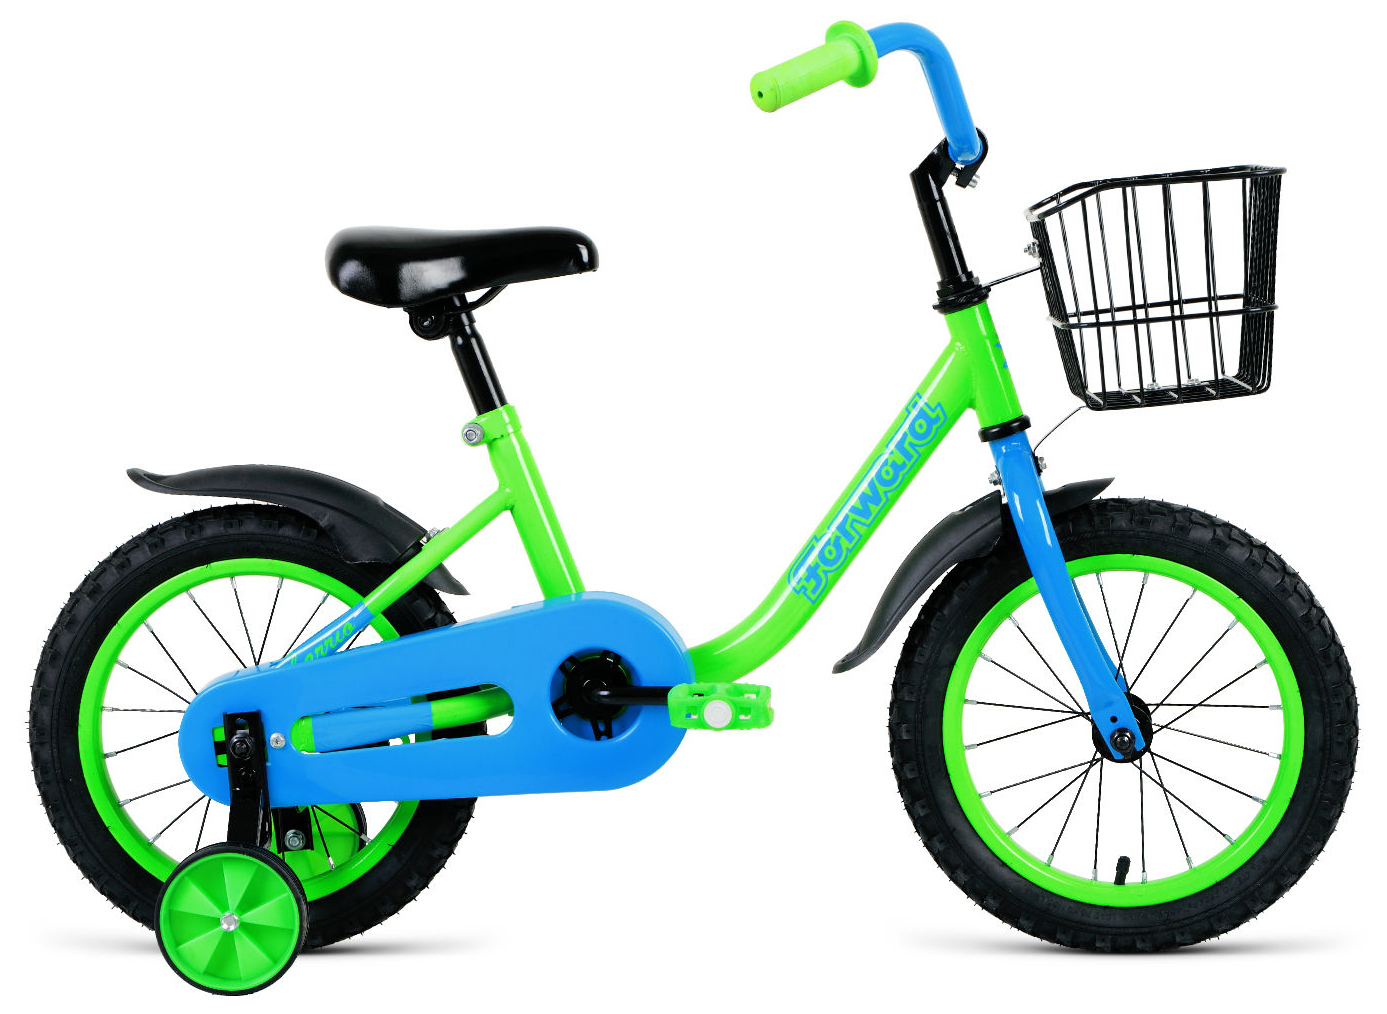  Отзывы о Детском велосипеде Forward Barrio 14 (2021) 2021